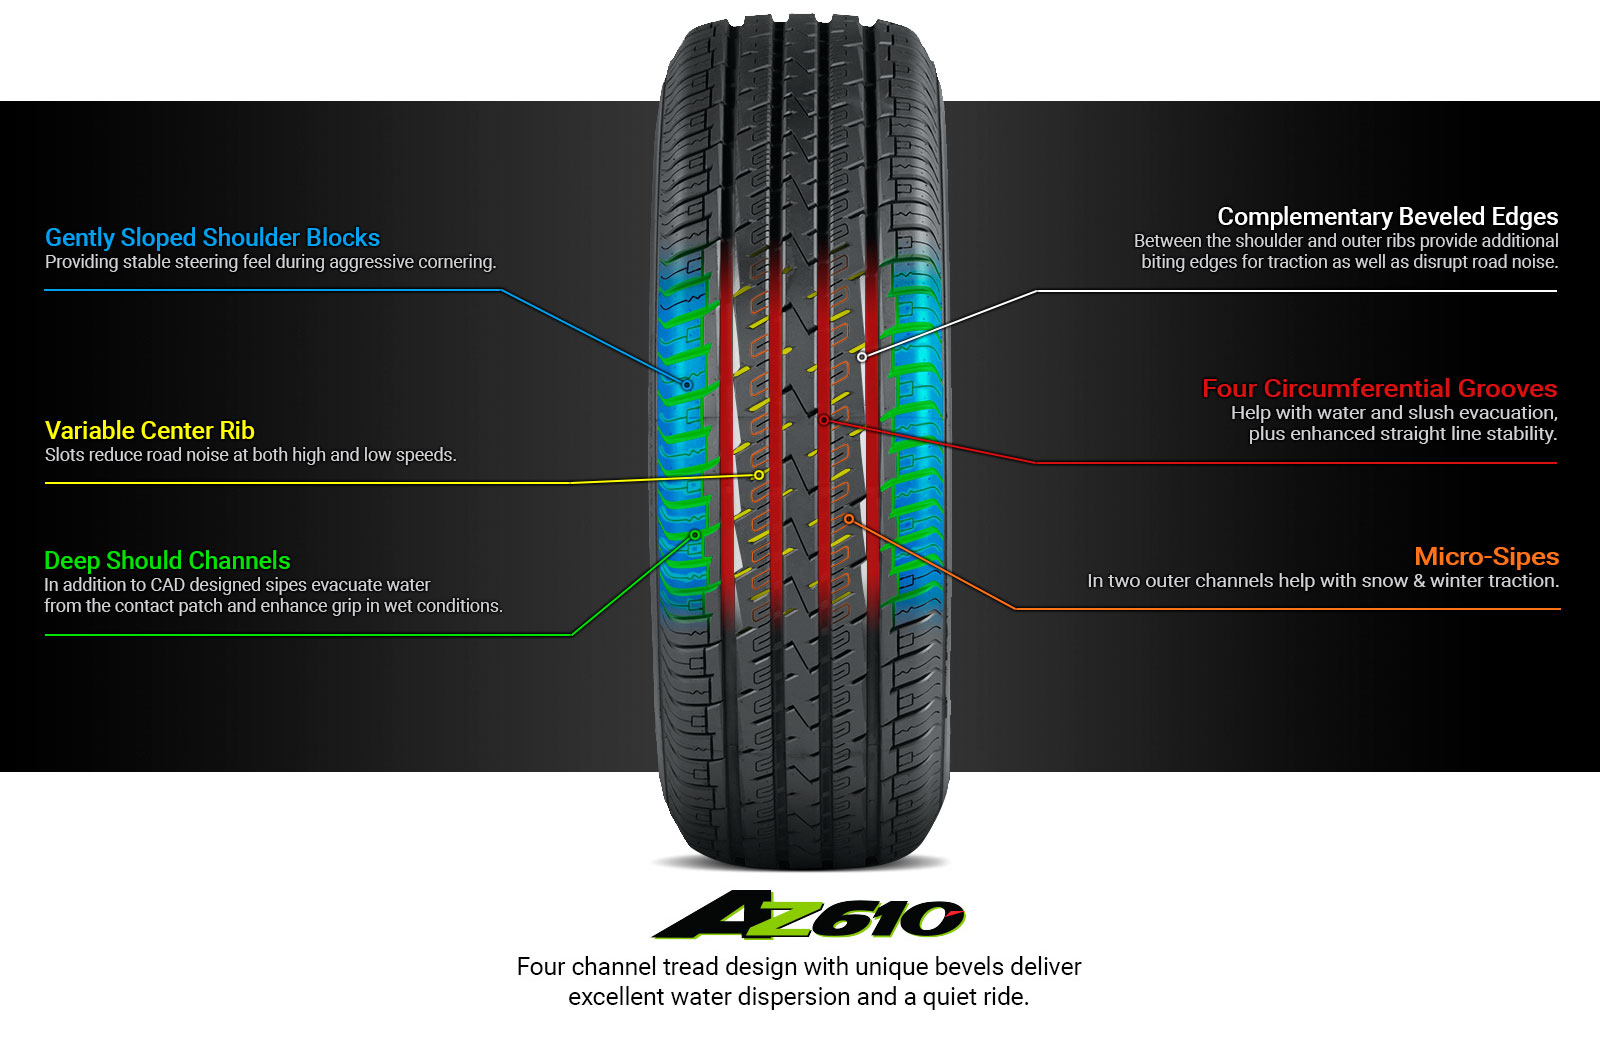 AZ610 Tire Technology